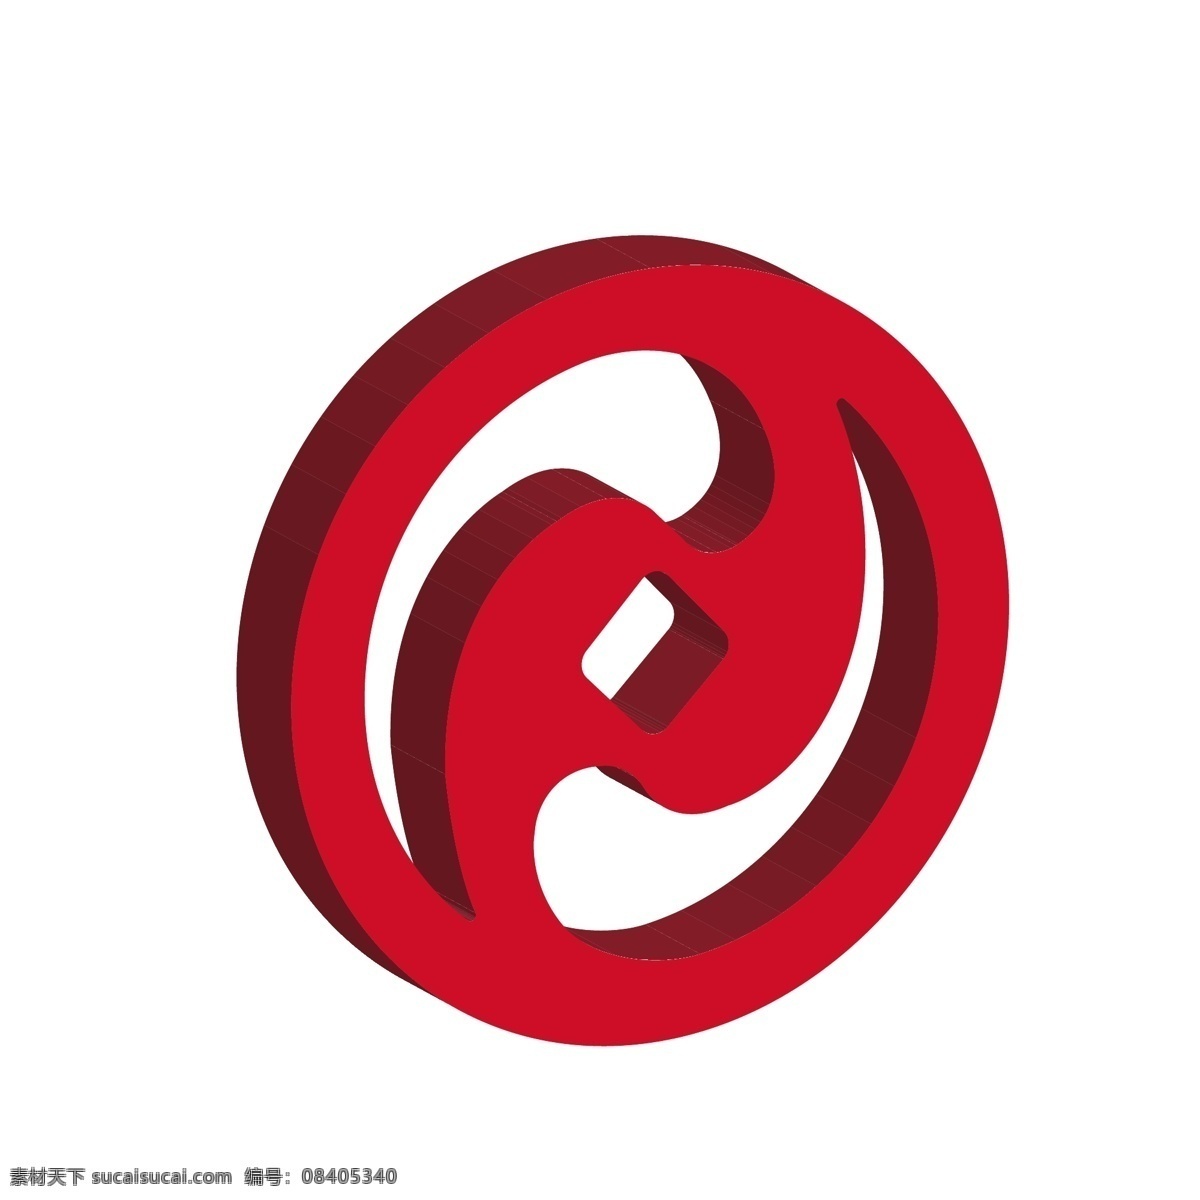 东营市 商业银行 logo 图标 红色 2.5d 立体 logo图标 货币信贷 矢量银行 金融机构 手机app 免抠图png 千库原创